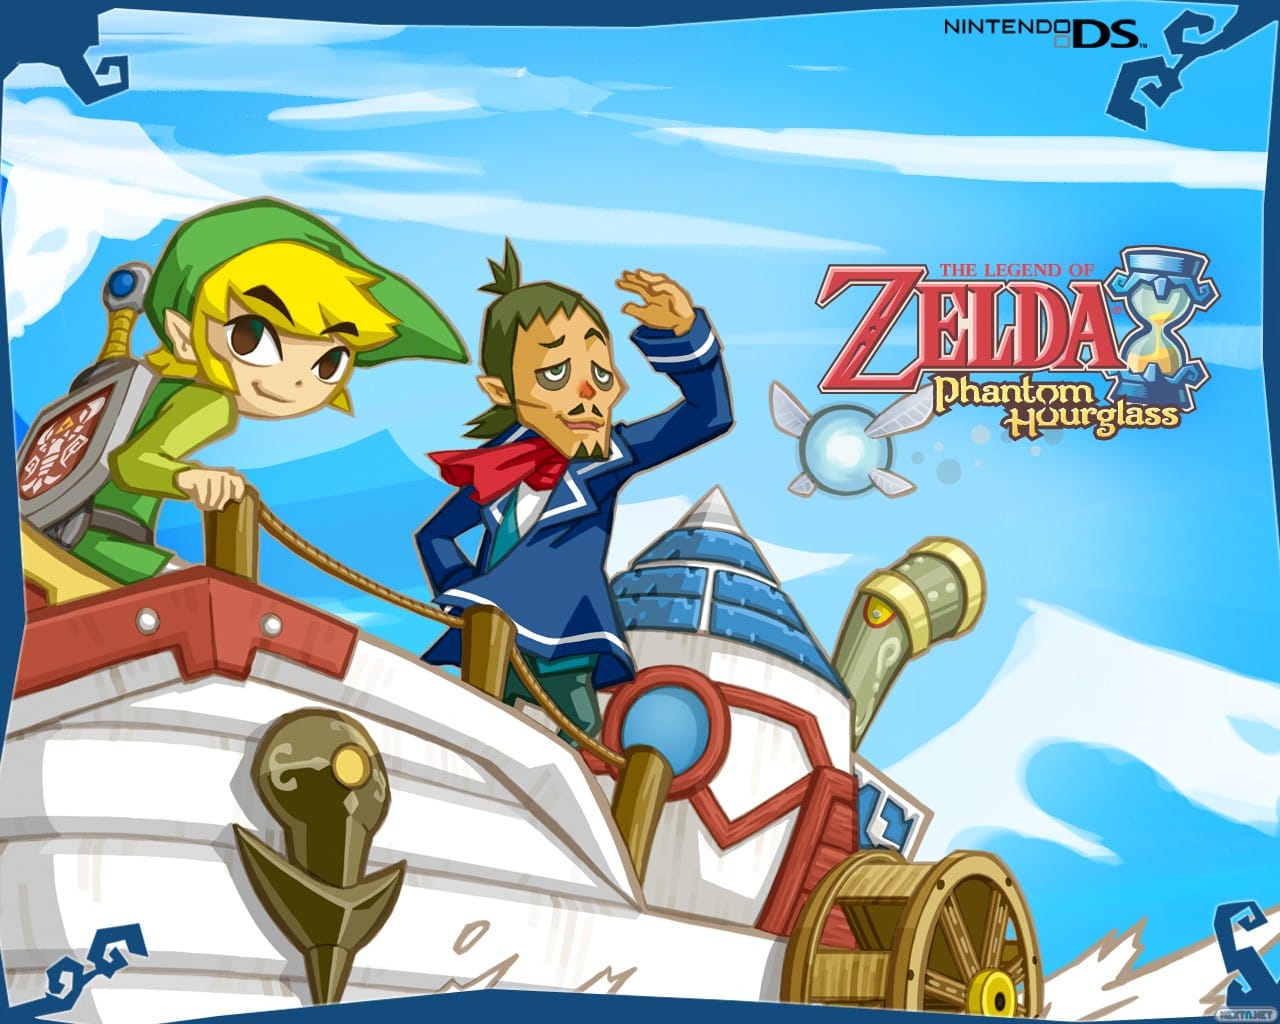 The Legend of Zelda: juegos de Nintendo DS ya en Wii U